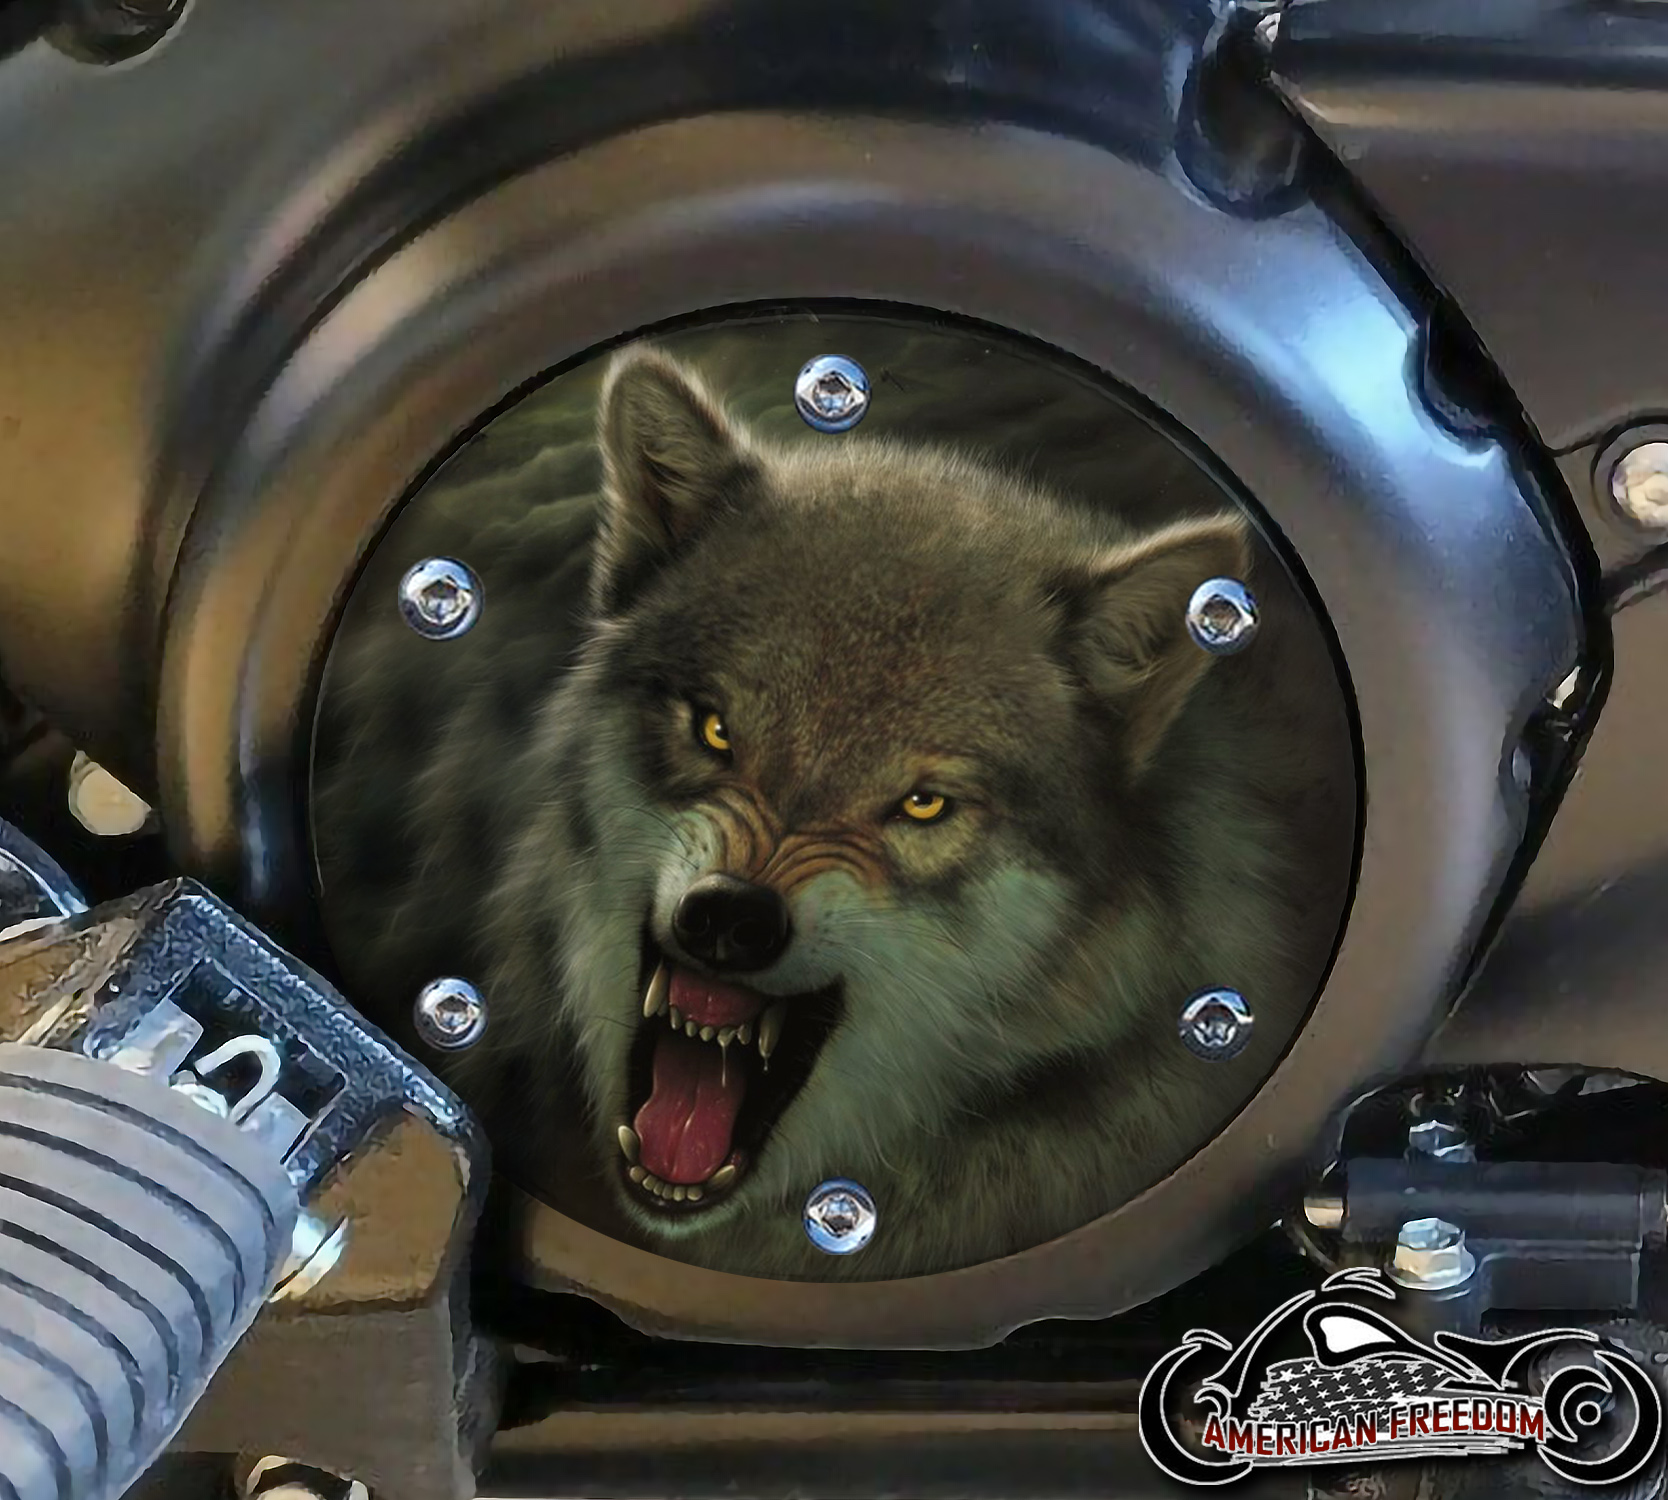 SUZUKI M109R Derby/Engine Cover - Snarling Wolf